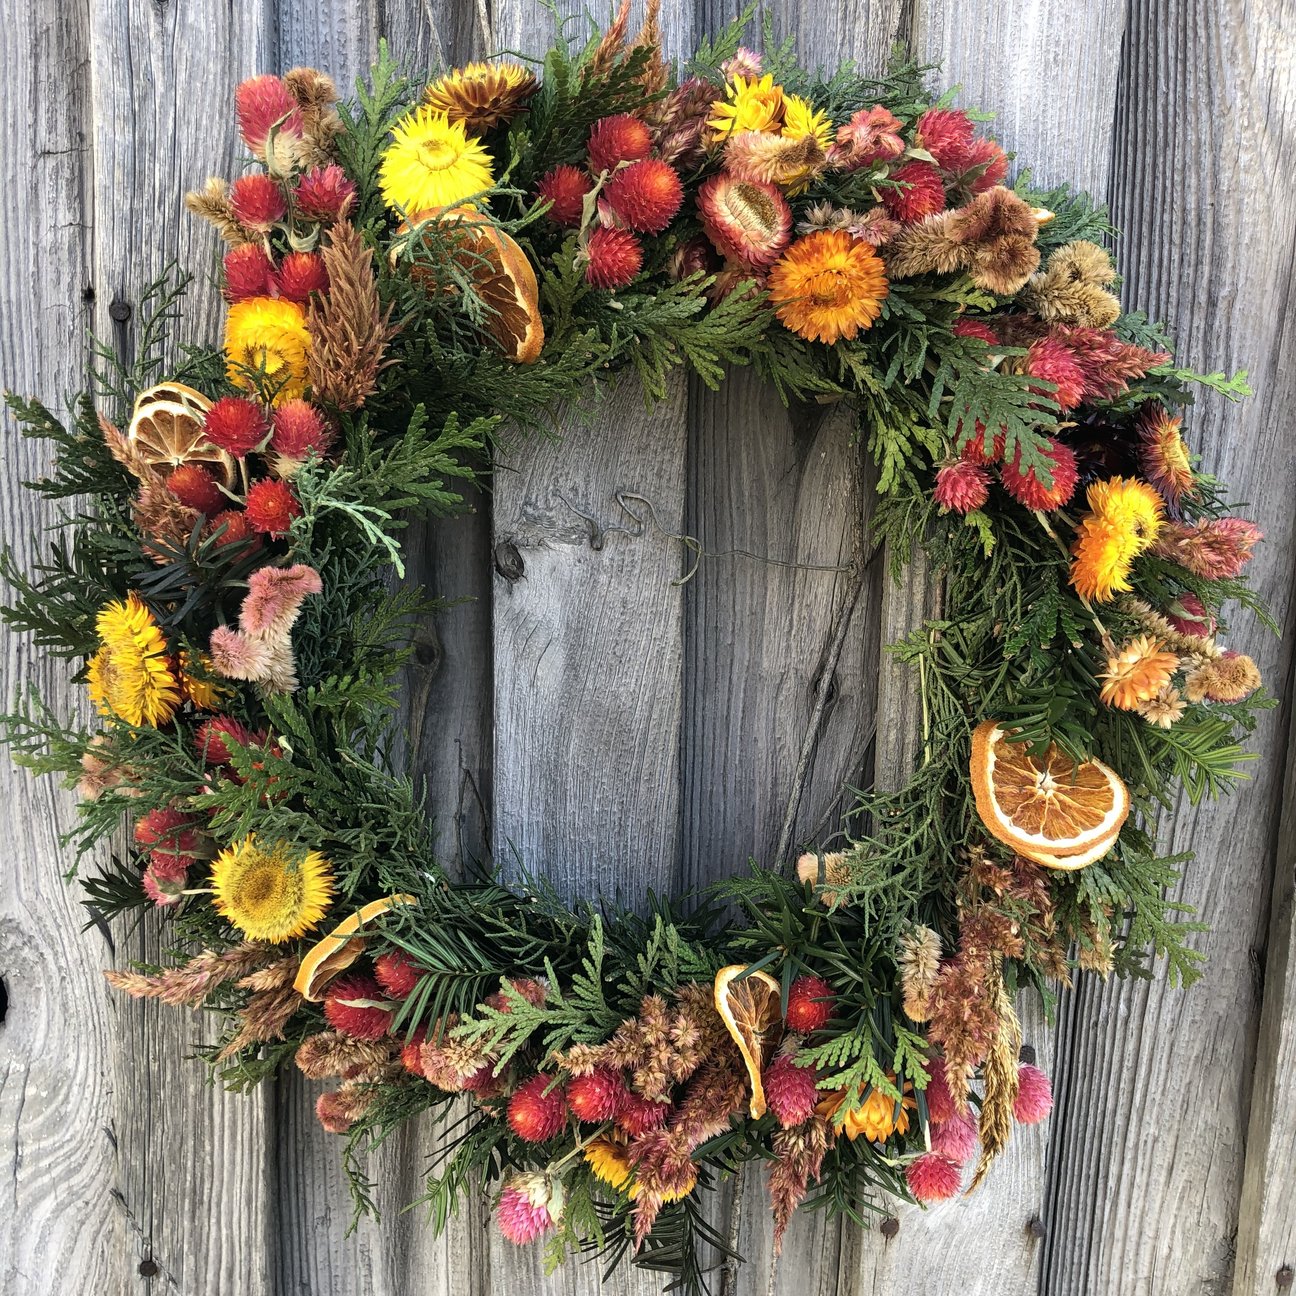 Dried Flower Wreath Workshop December 2, Afternoon